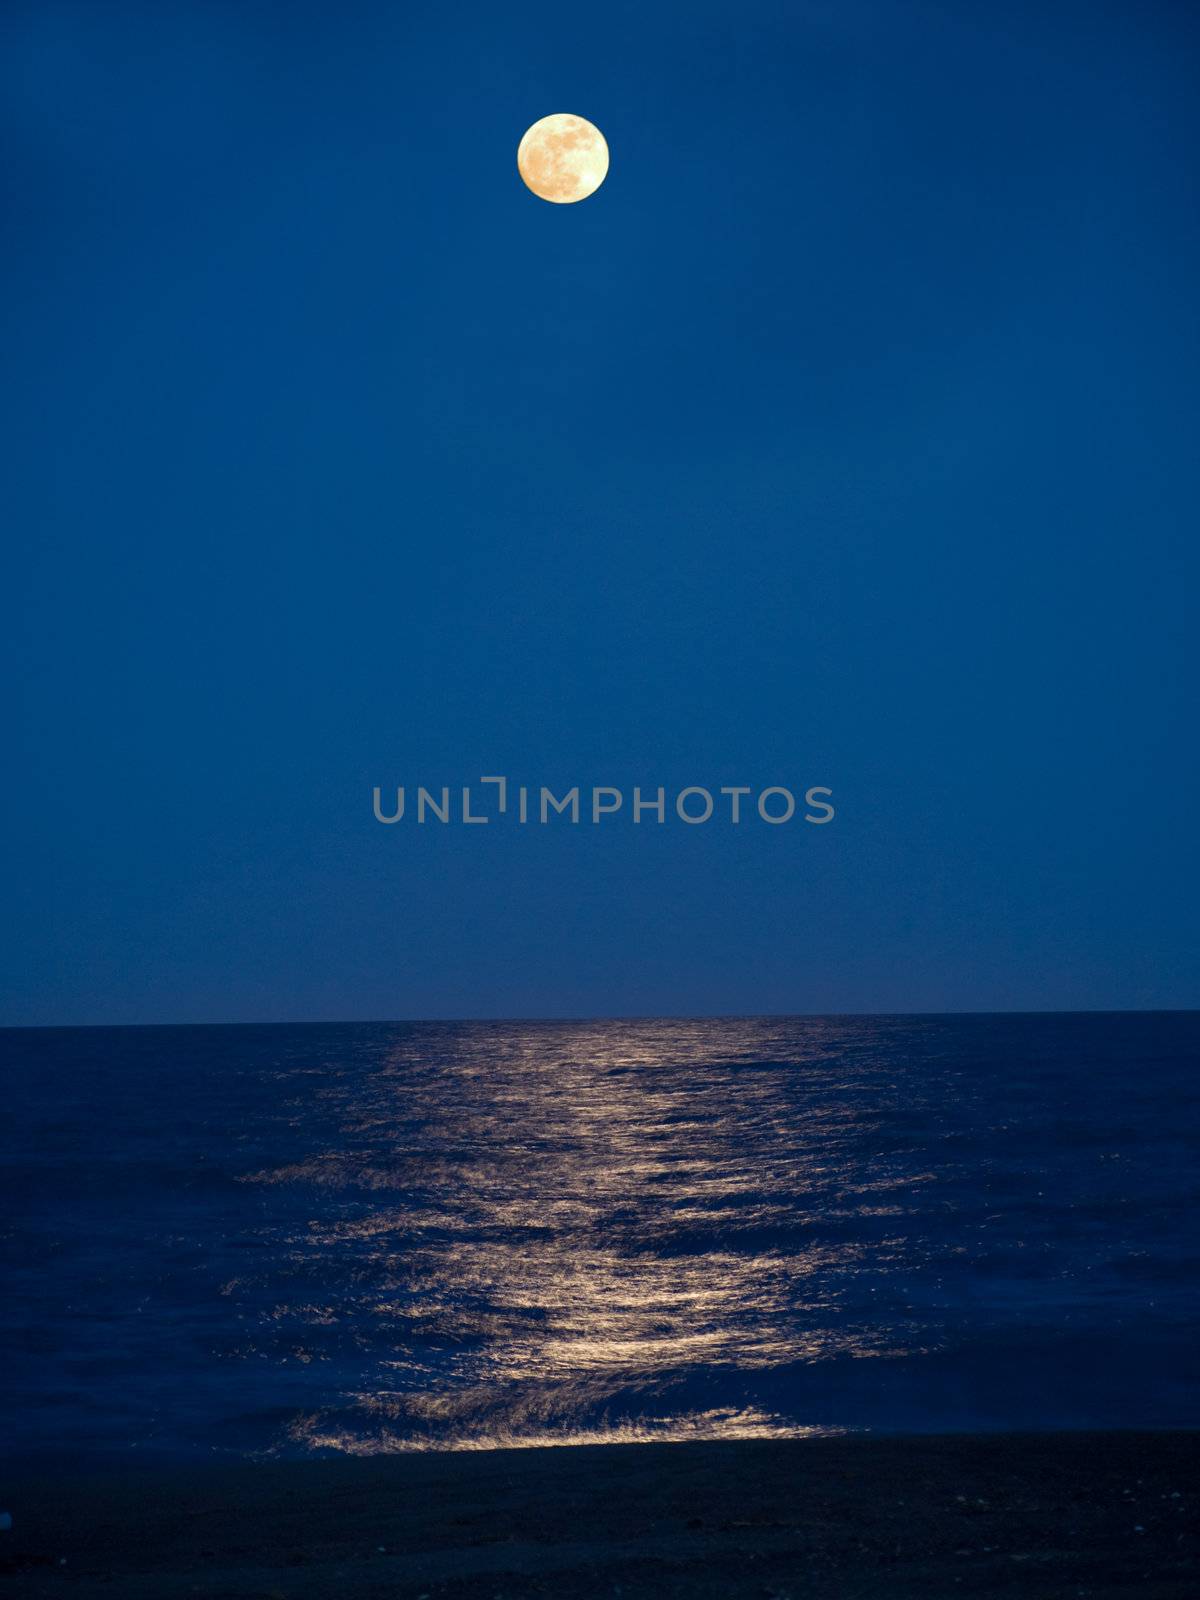 Full moon reflecting in a still sea